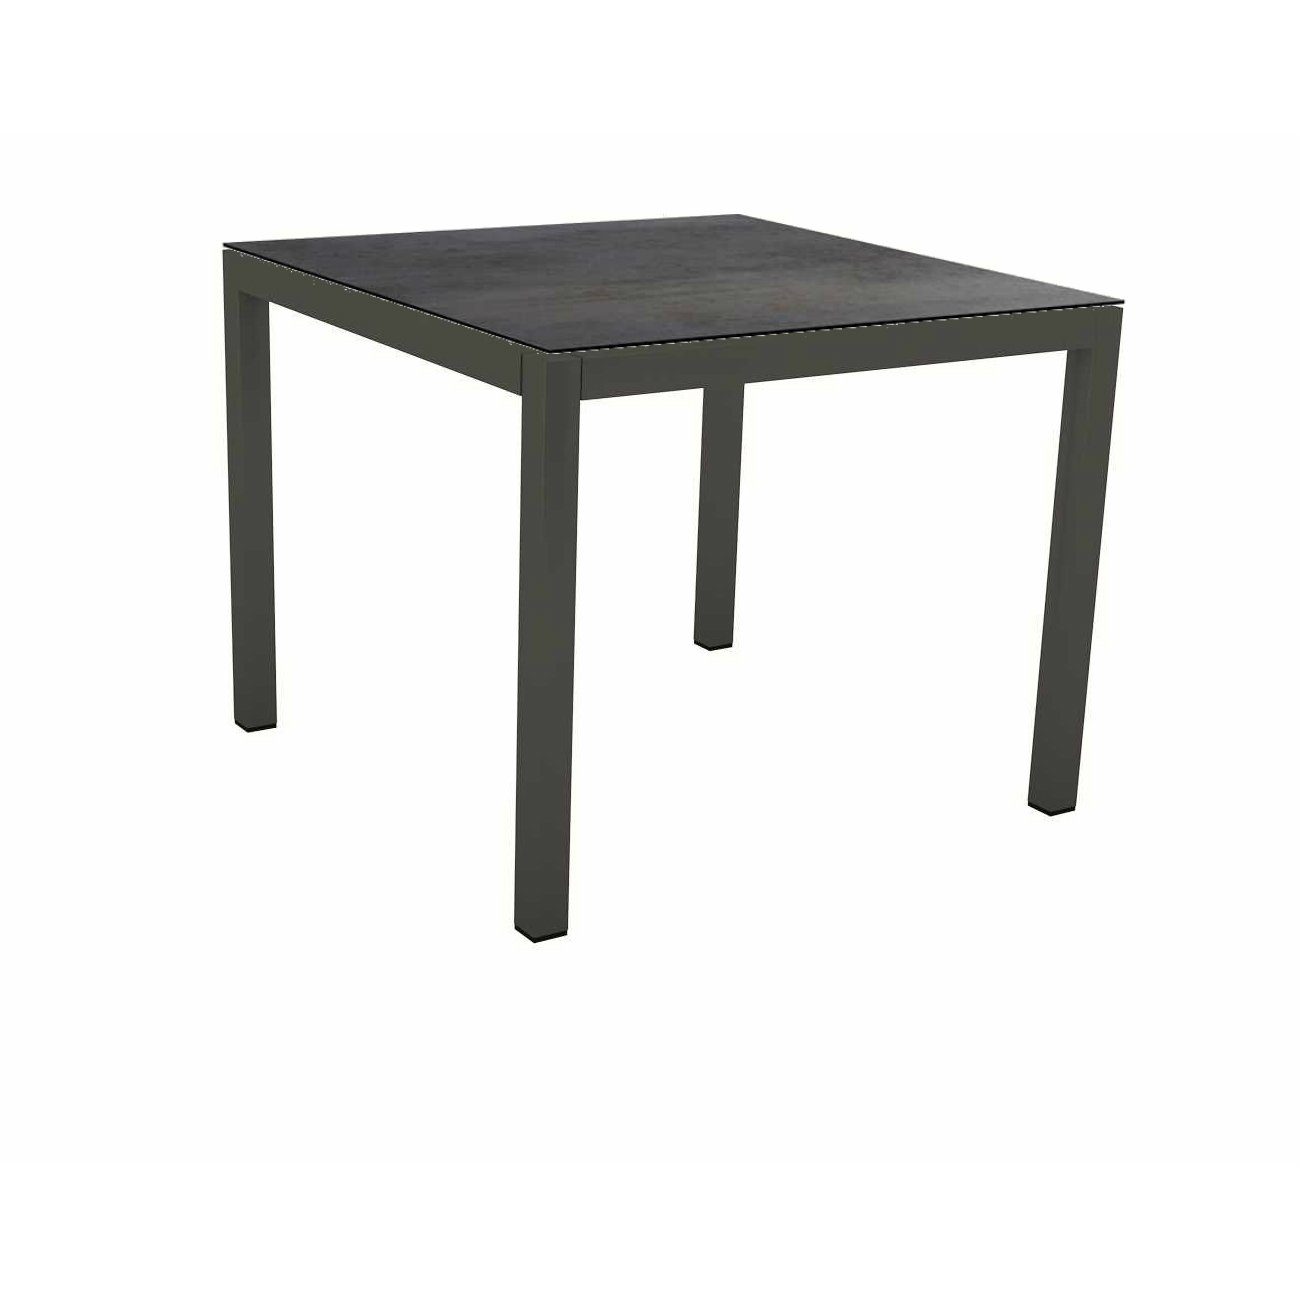 Stern Tischsystem Gartentisch, Gestell Aluminium anthrazit, Tischplatte HPL Nitro, Maße: 80x80 cm